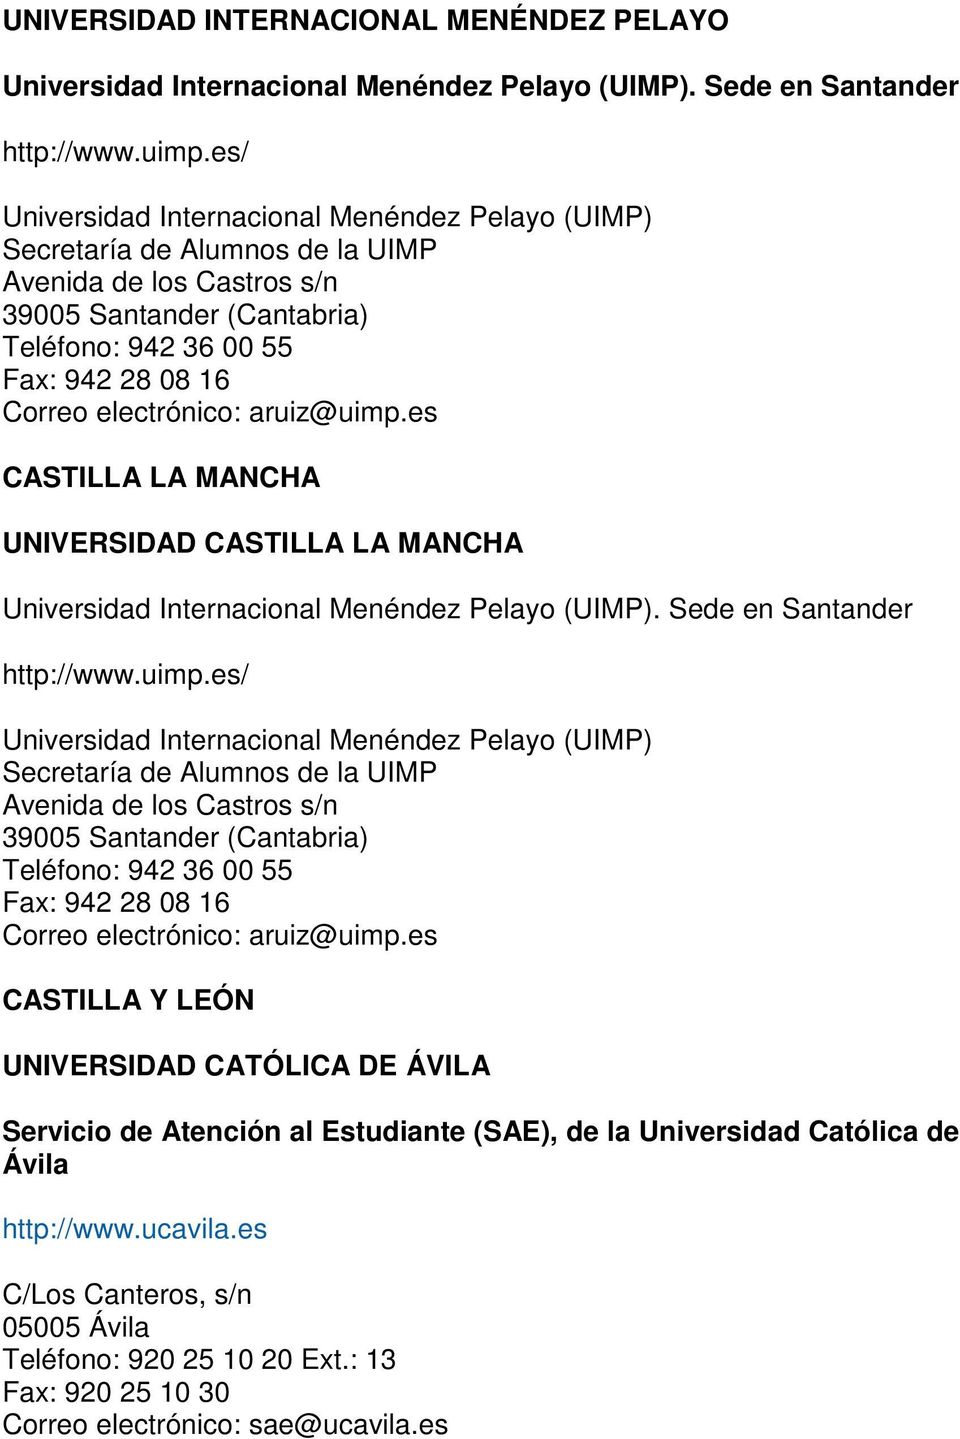 electrónico: aruiz@uimp.es CASTILLA LA MANCHA UNIVERSIDAD CASTILLA LA MANCHA Universidad Internacional Menéndez Pelayo (UIMP). Sede en Santander http://www.uimp. electrónico: aruiz@uimp.